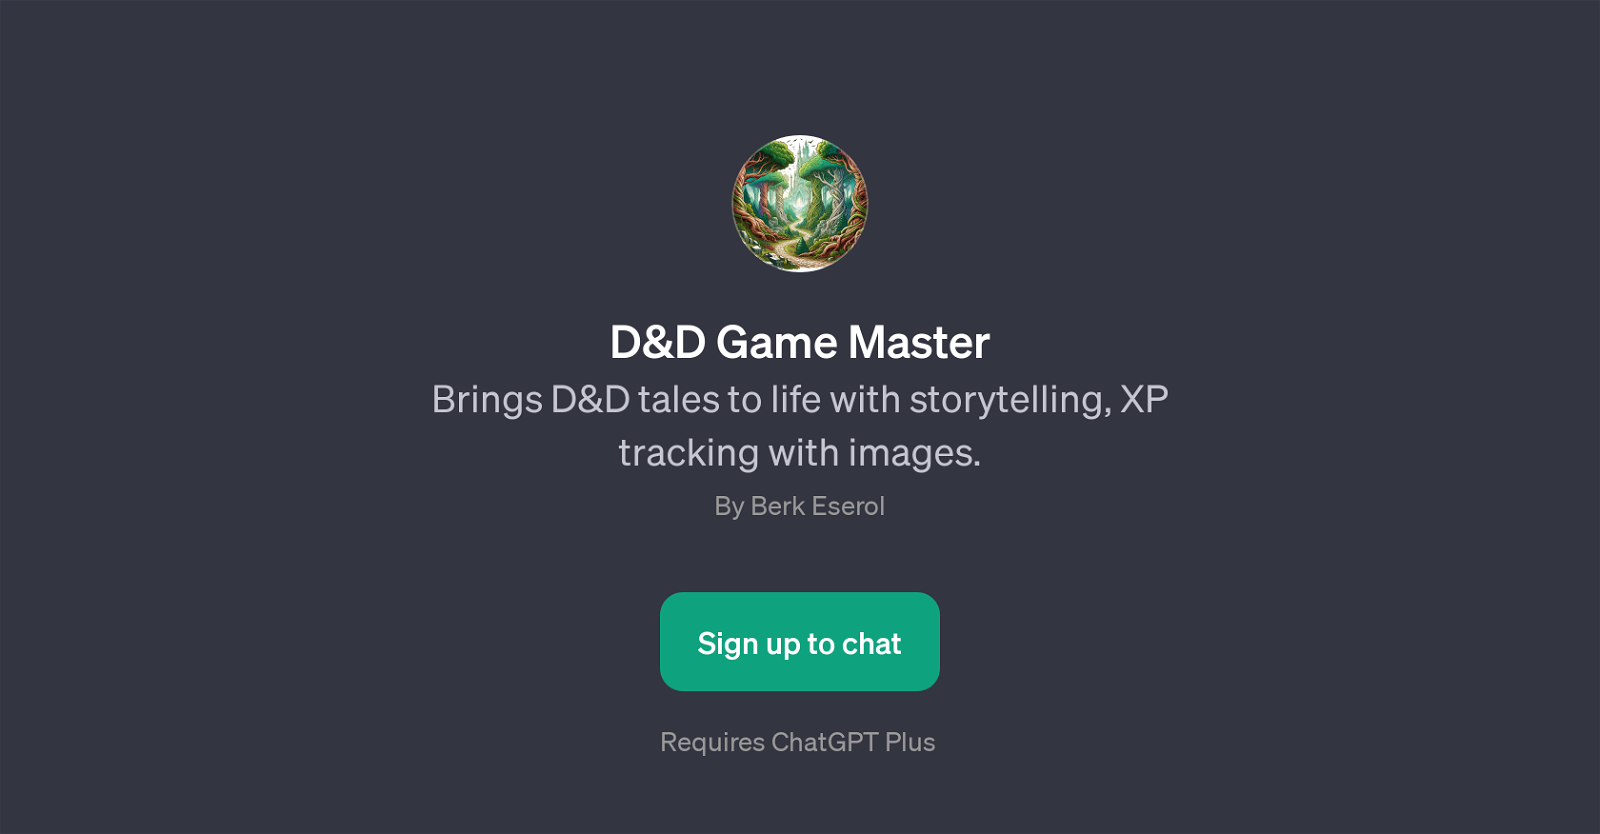 D&D Game Master website